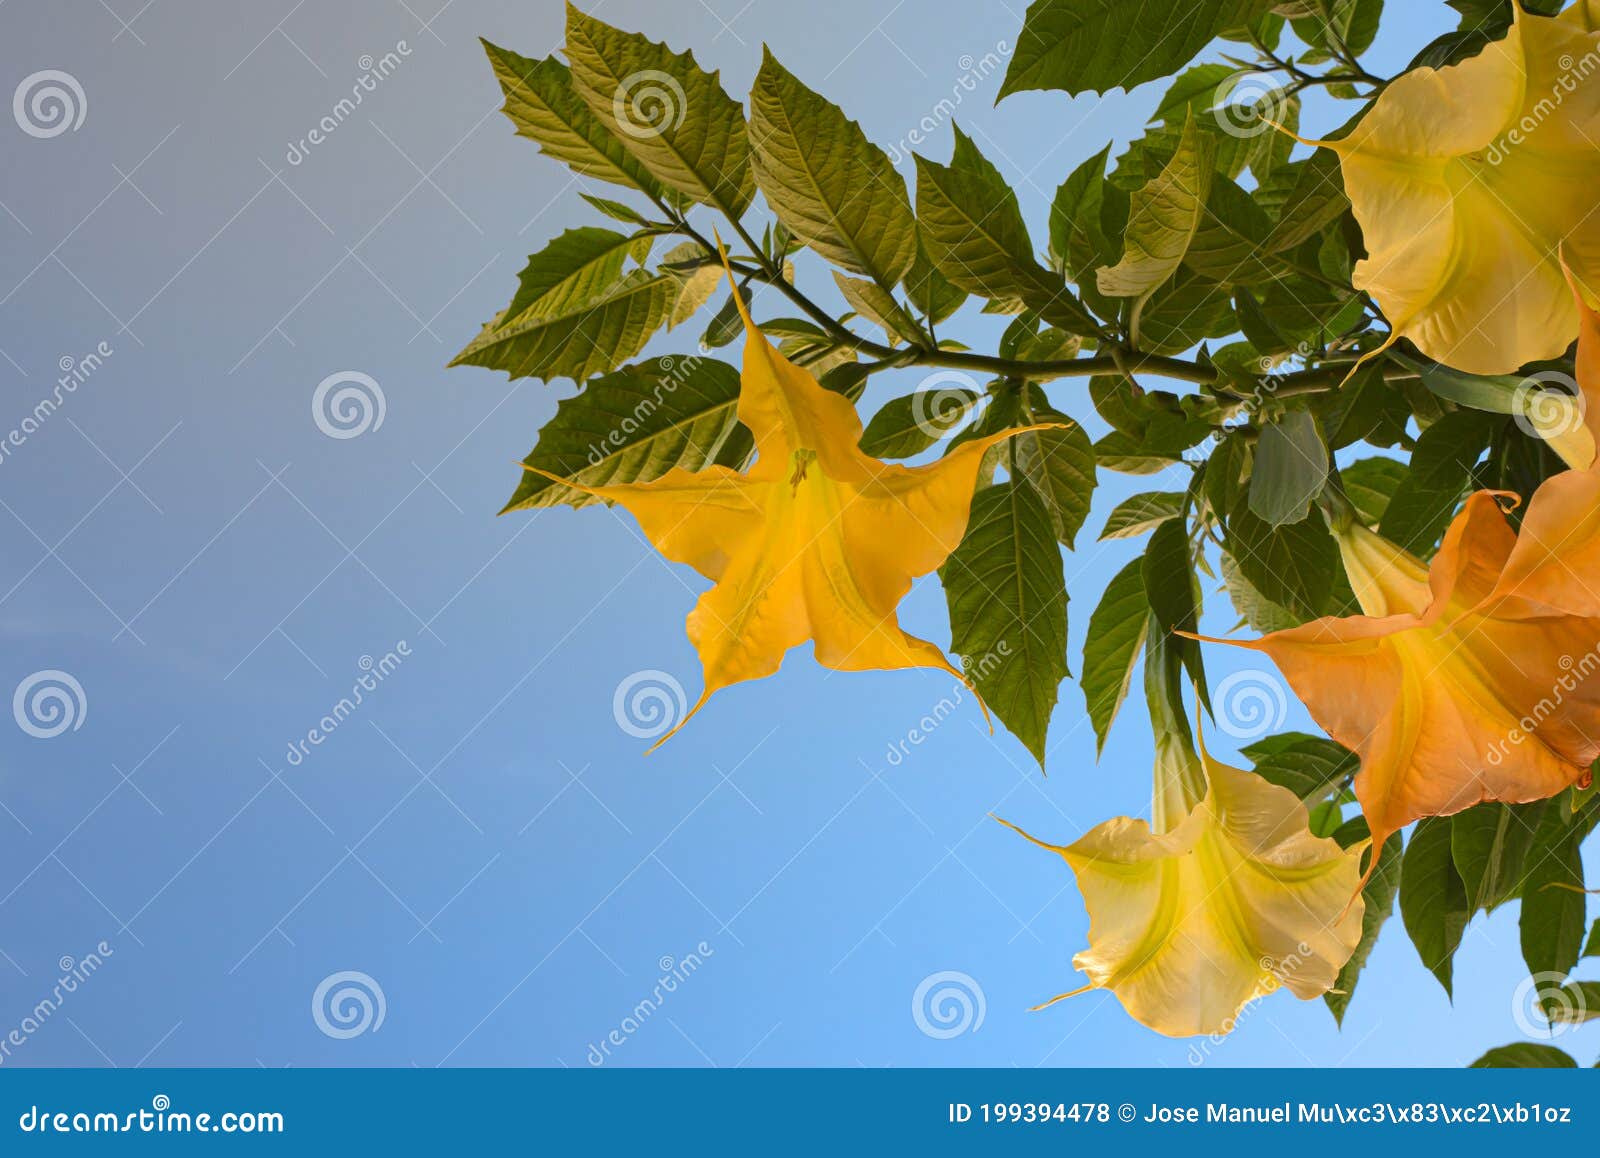 yellow flowers called trompeta angel or diablo